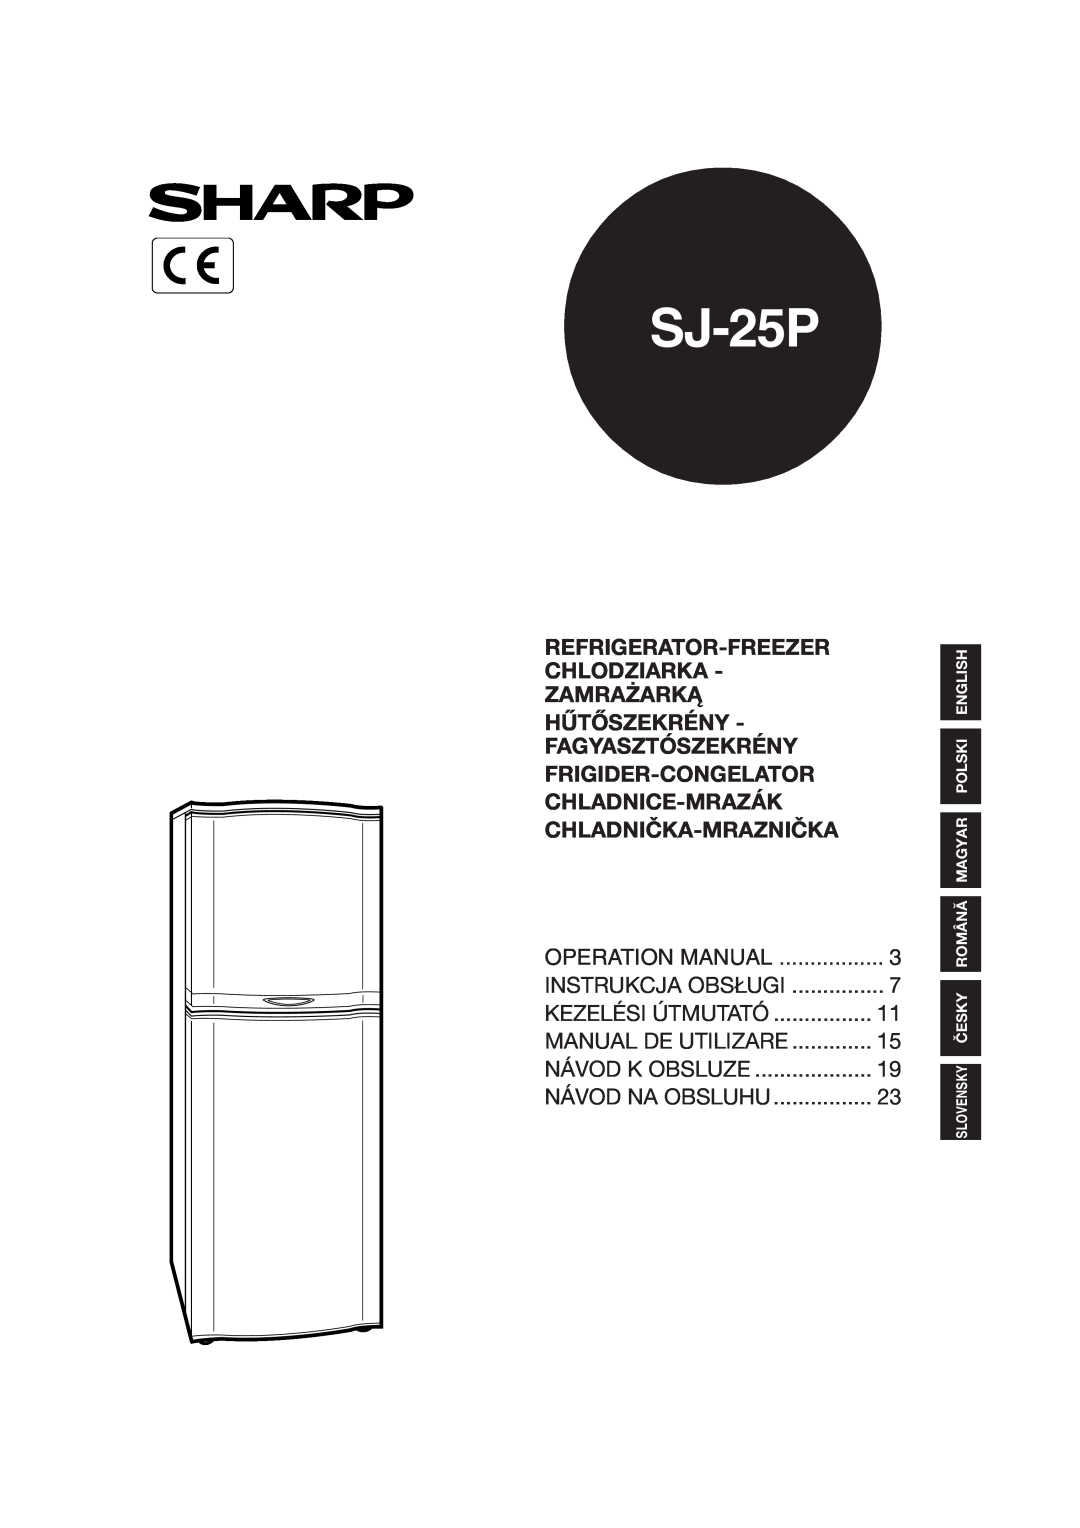 Sharp SJ-25P operation manual Refrigerator-Freezer Chlodziarka - Zamrażarką, Hűtőszekrény - Fagyasztószekrény 